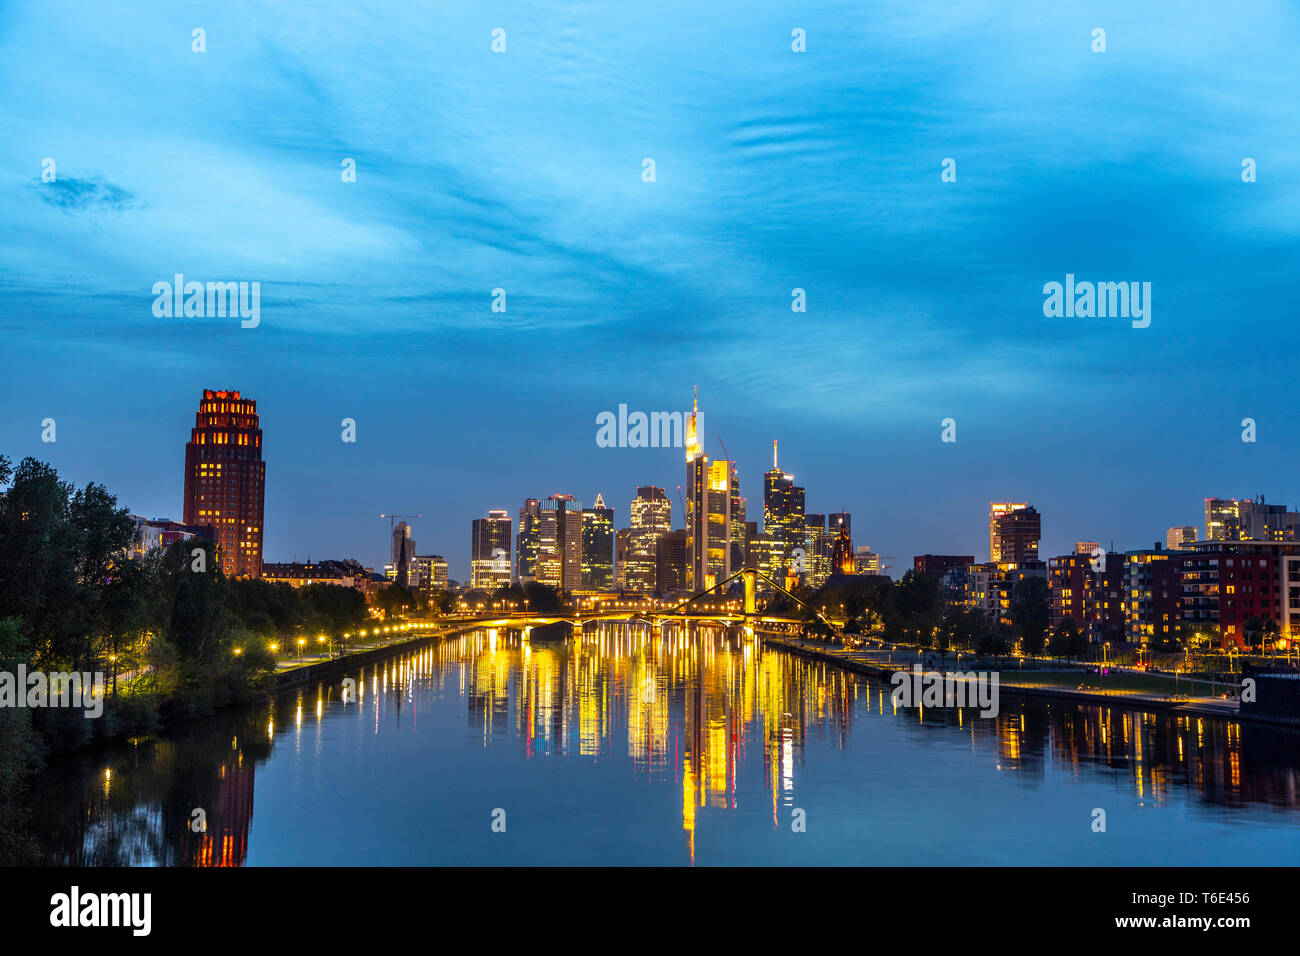 Frankfurt am Main, skyline del centro, grattacieli nel distretto bancario, FlšsserbrŸcke, Foto Stock